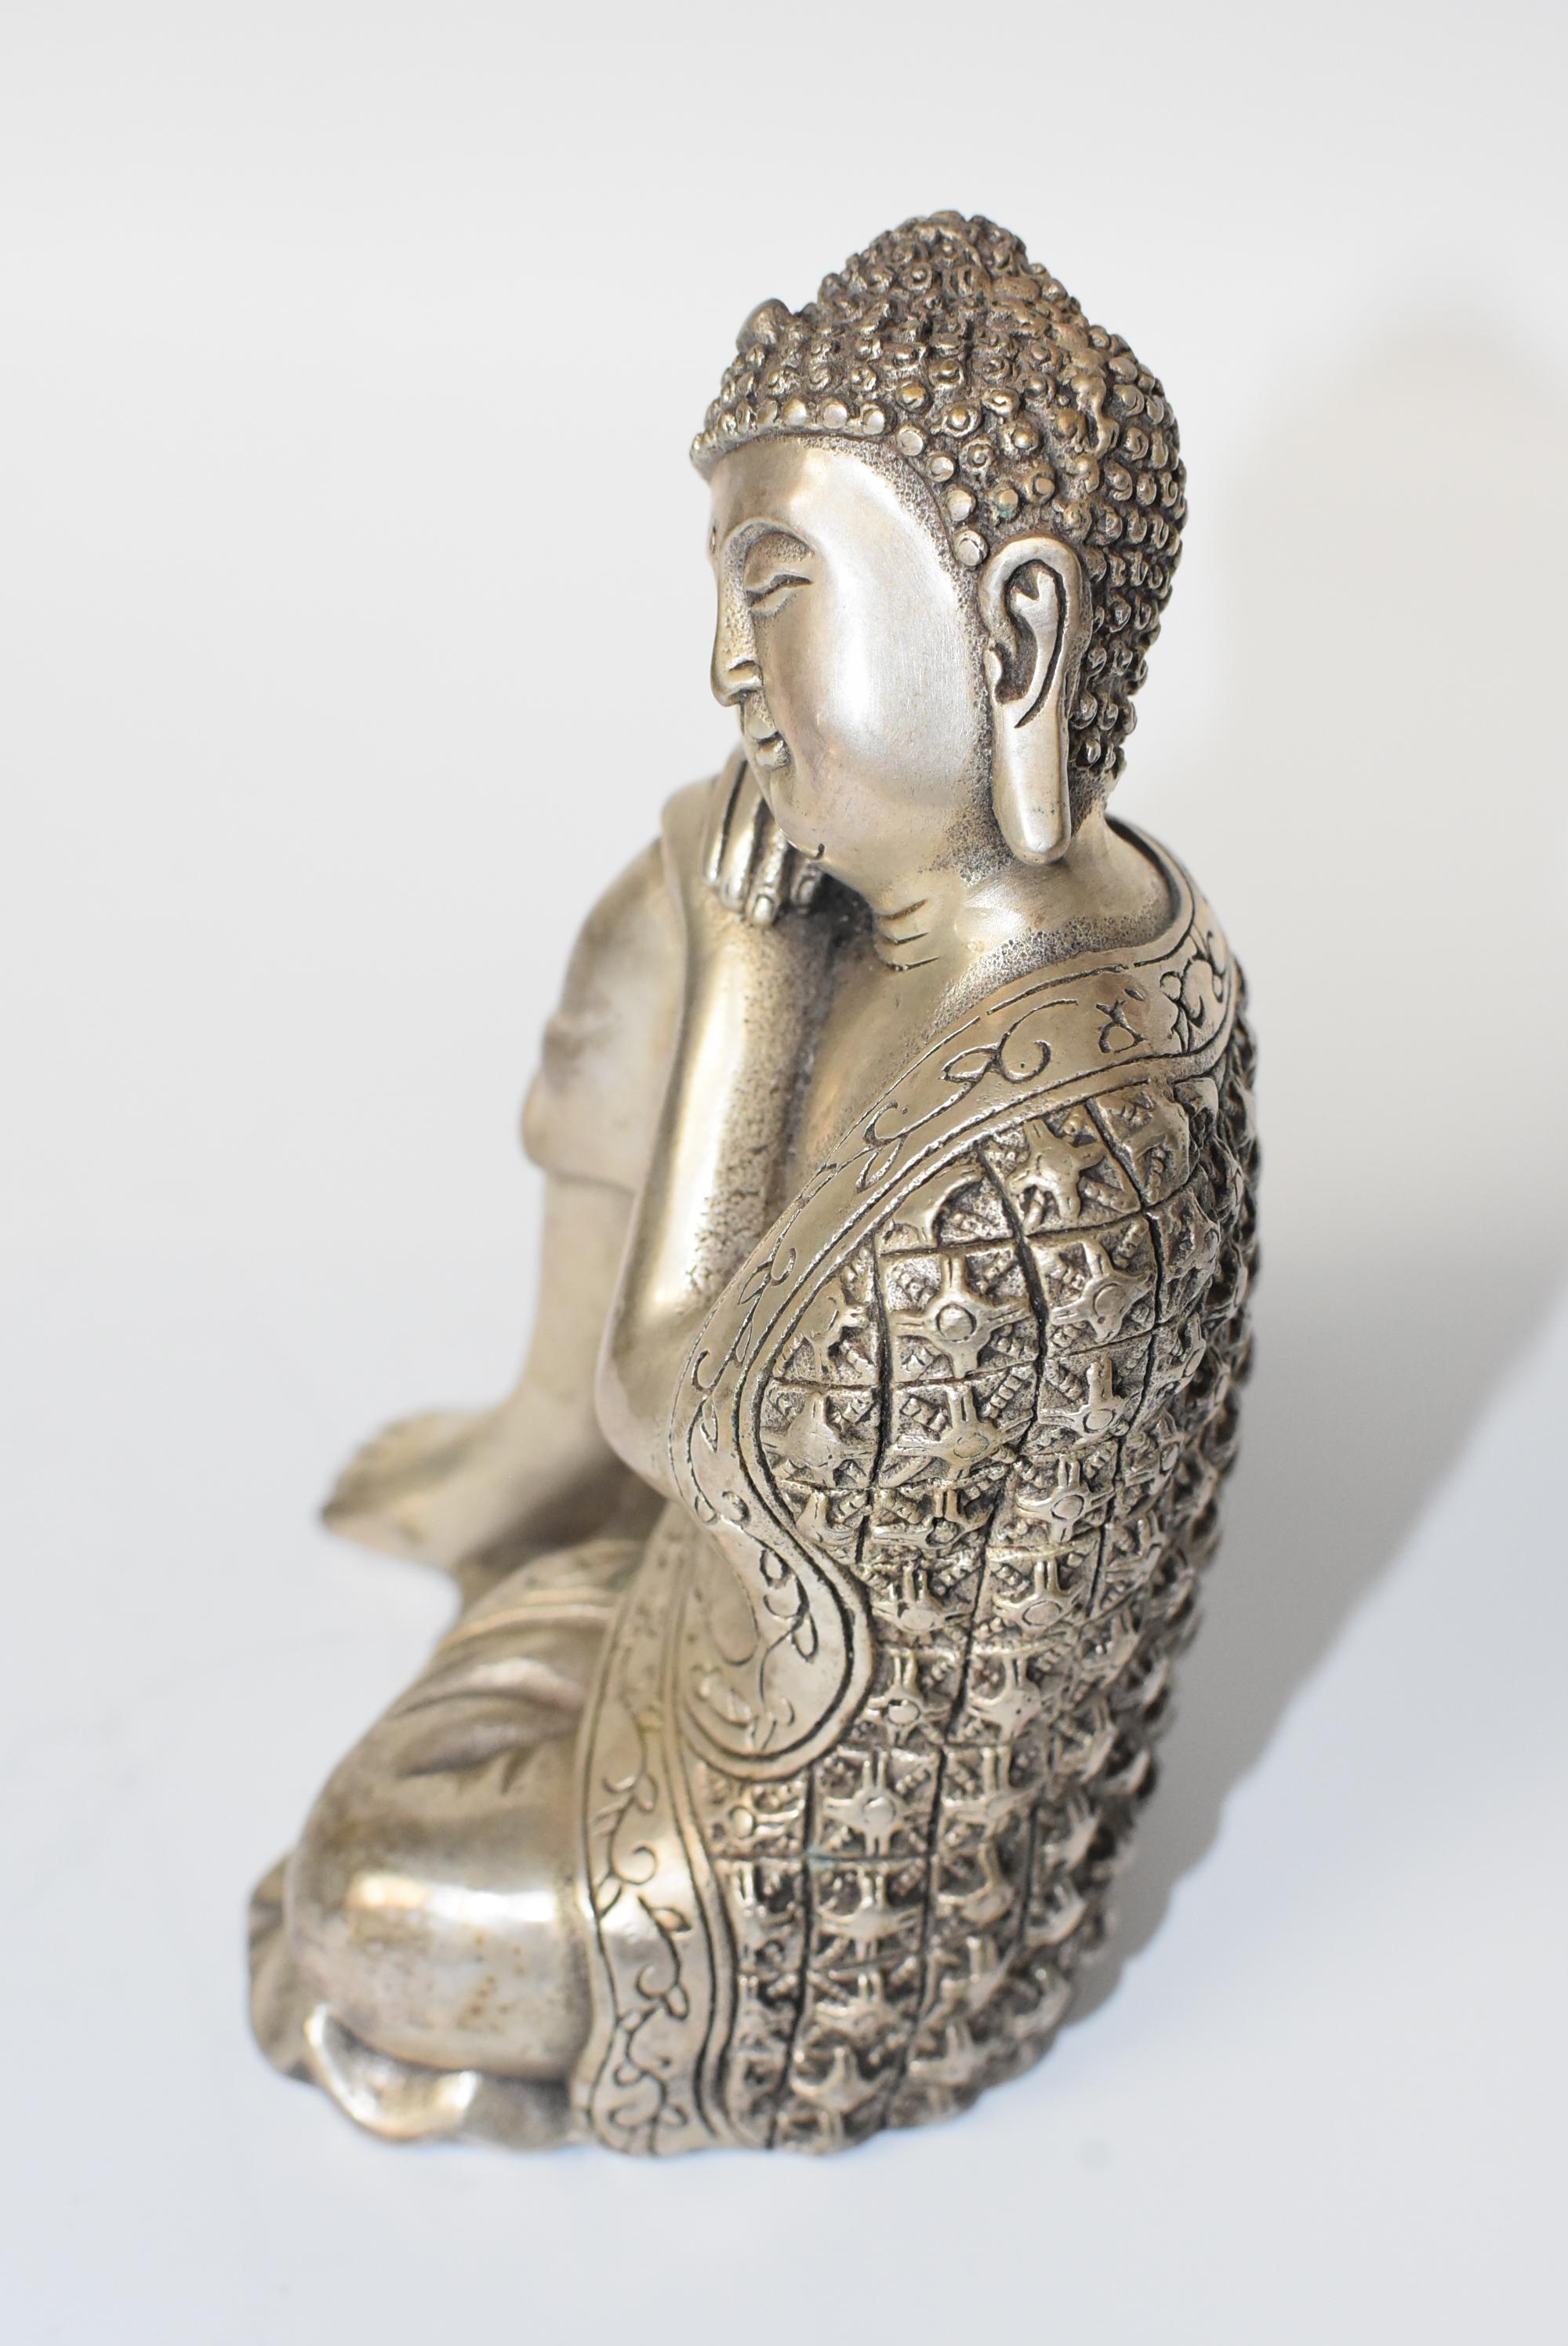 Silvered Brass Buddha Statue, a Thinking Buddha 9